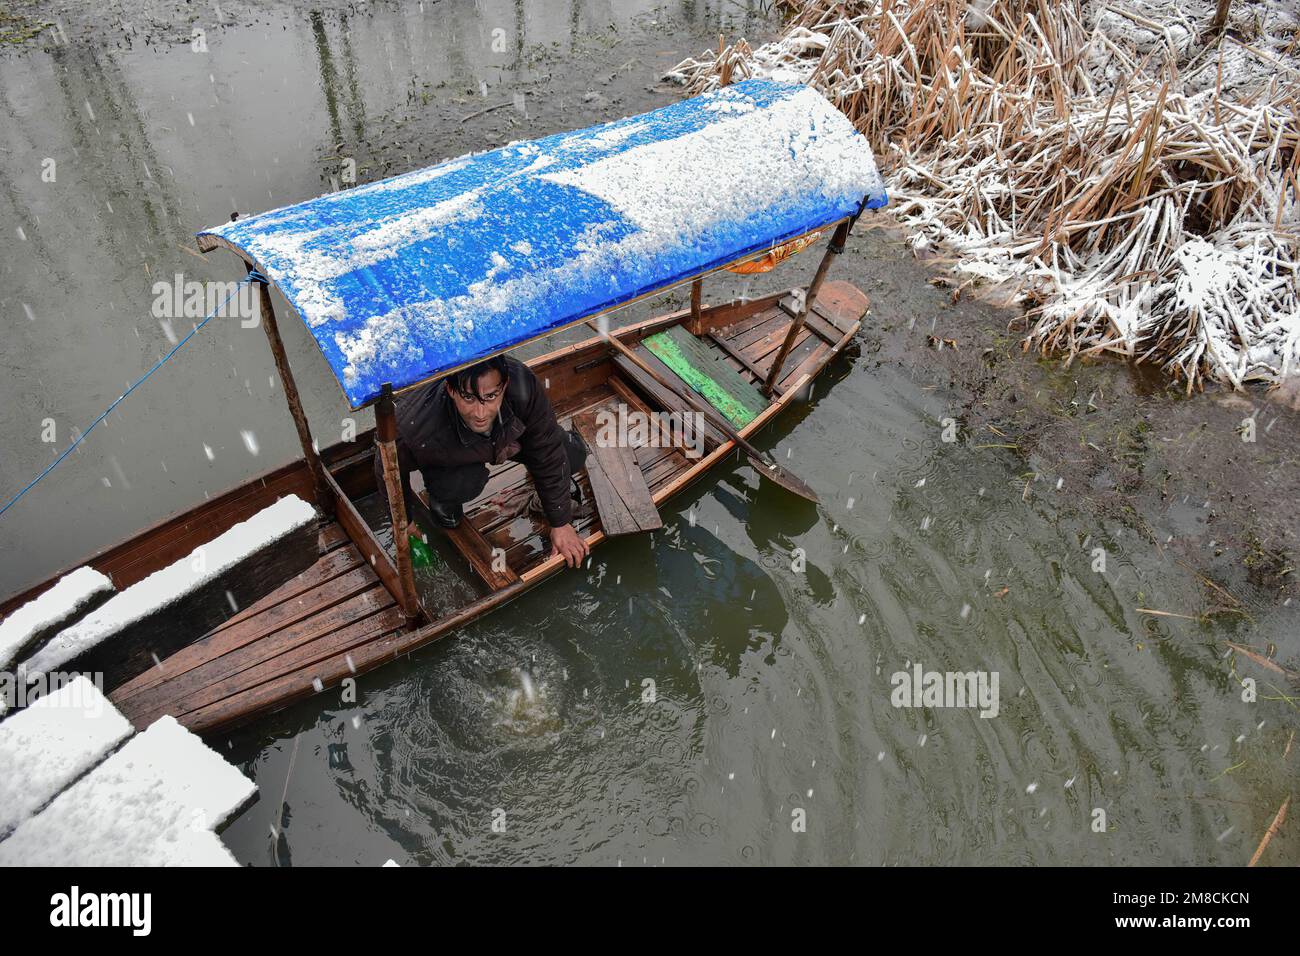 Un barcaiolo rimuove l'acqua dalla sua barca durante le nevicate. Parti della valle di Kashmir compreso Srinagar ha ricevuto nevicate che portano alla chiusura della vitale Srinagar-Jammu autostrada nazionale e la cancellazione delle operazioni di volo, funzionari qui ha detto. Foto Stock